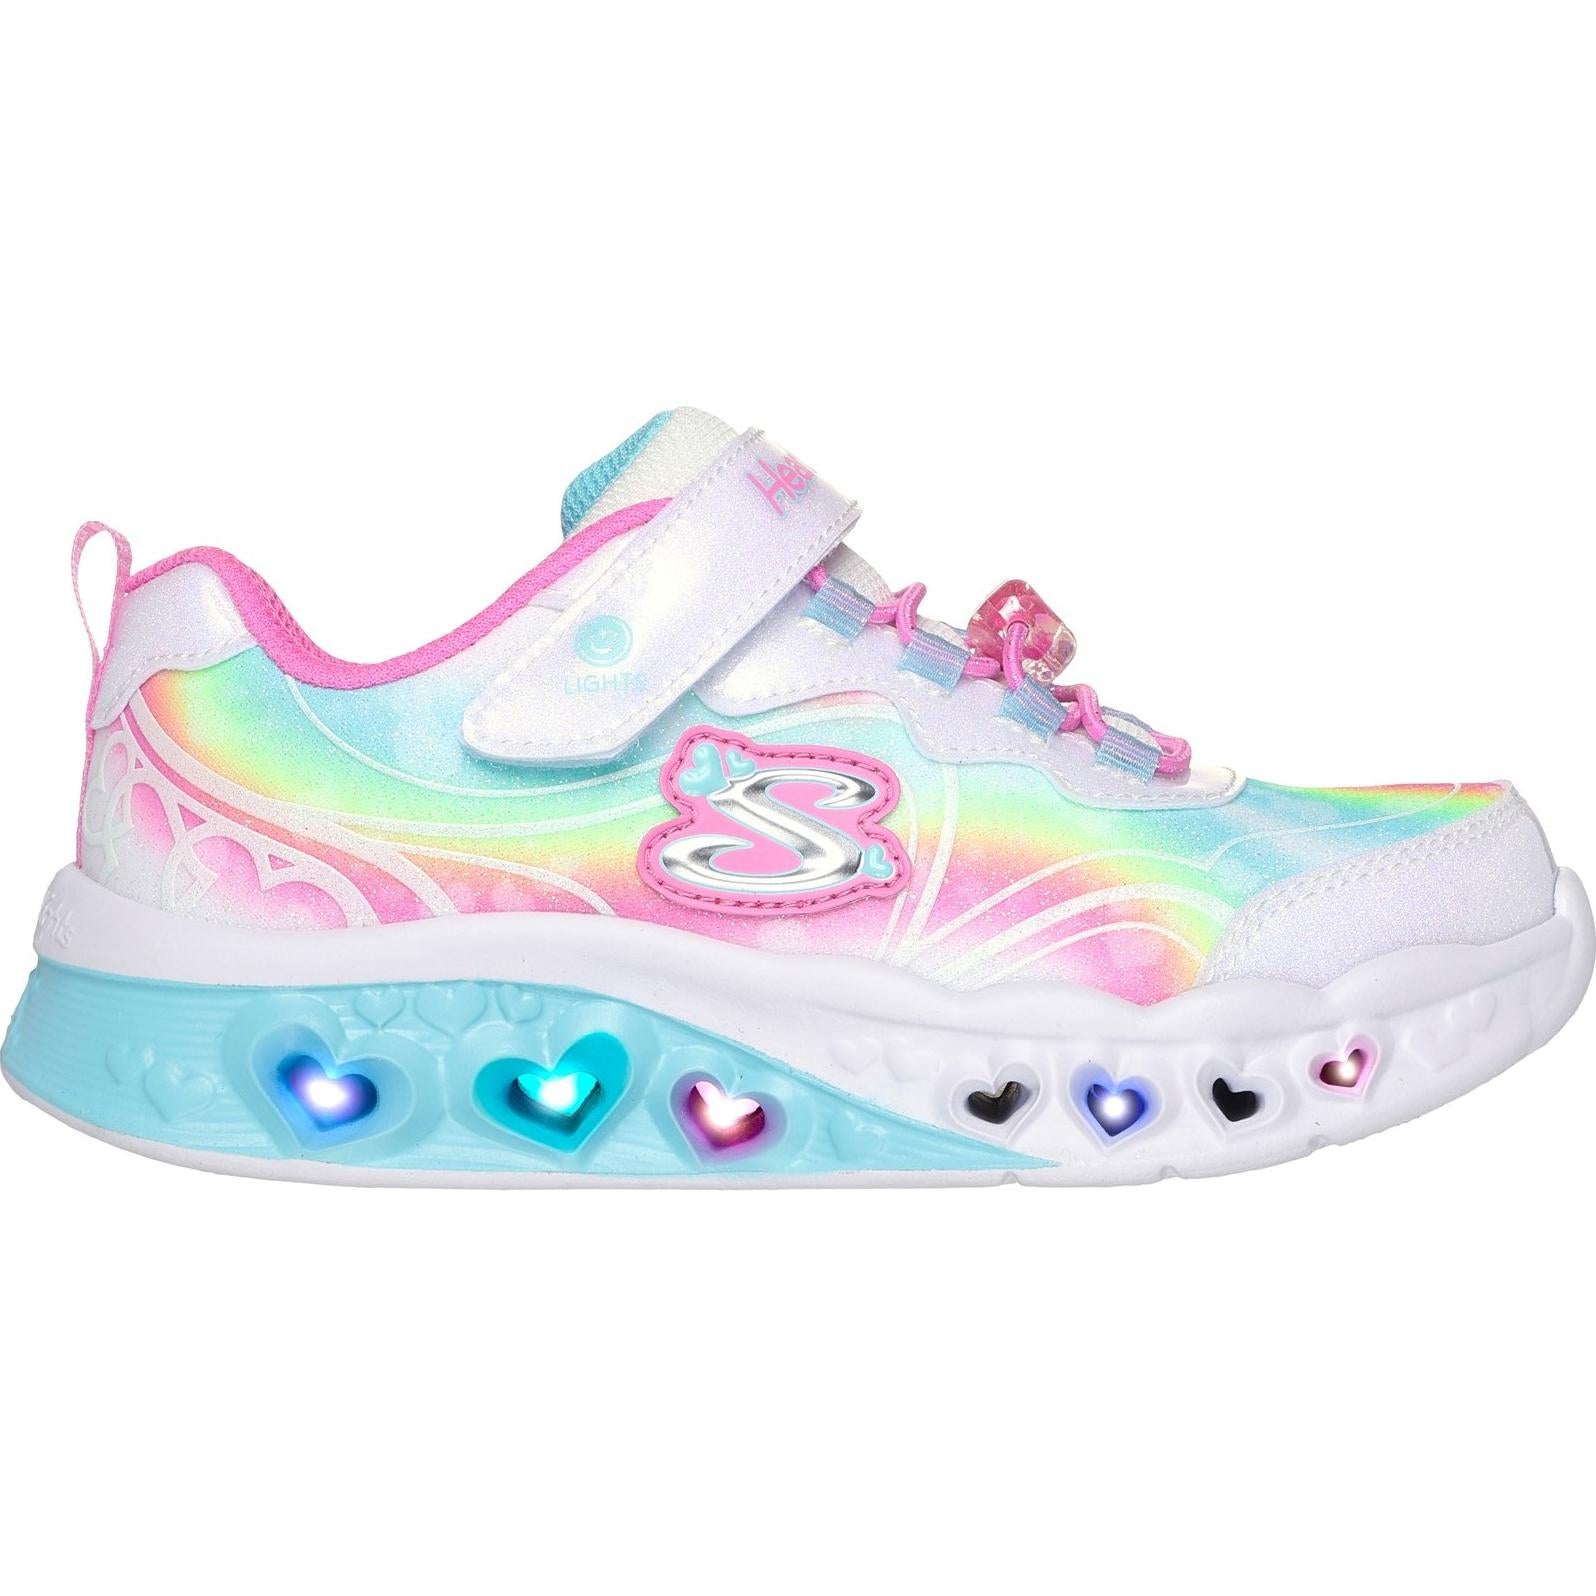 Skechers Flutter Heart Lights - Groovy Swirl Shoe